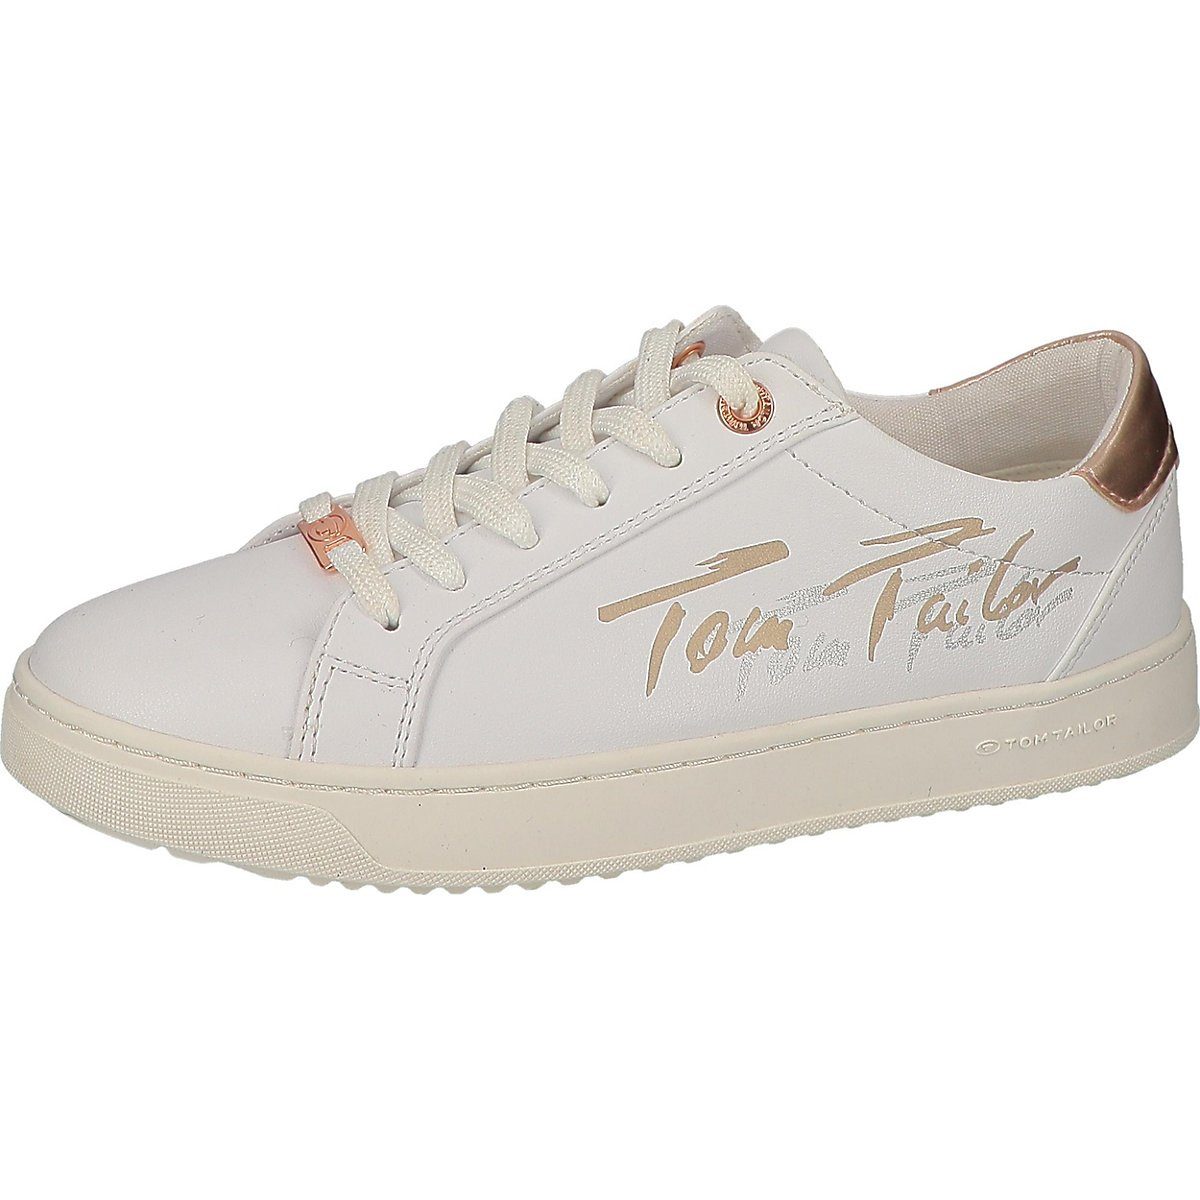 Tom Tailor Schuhe online kaufen | OTTO